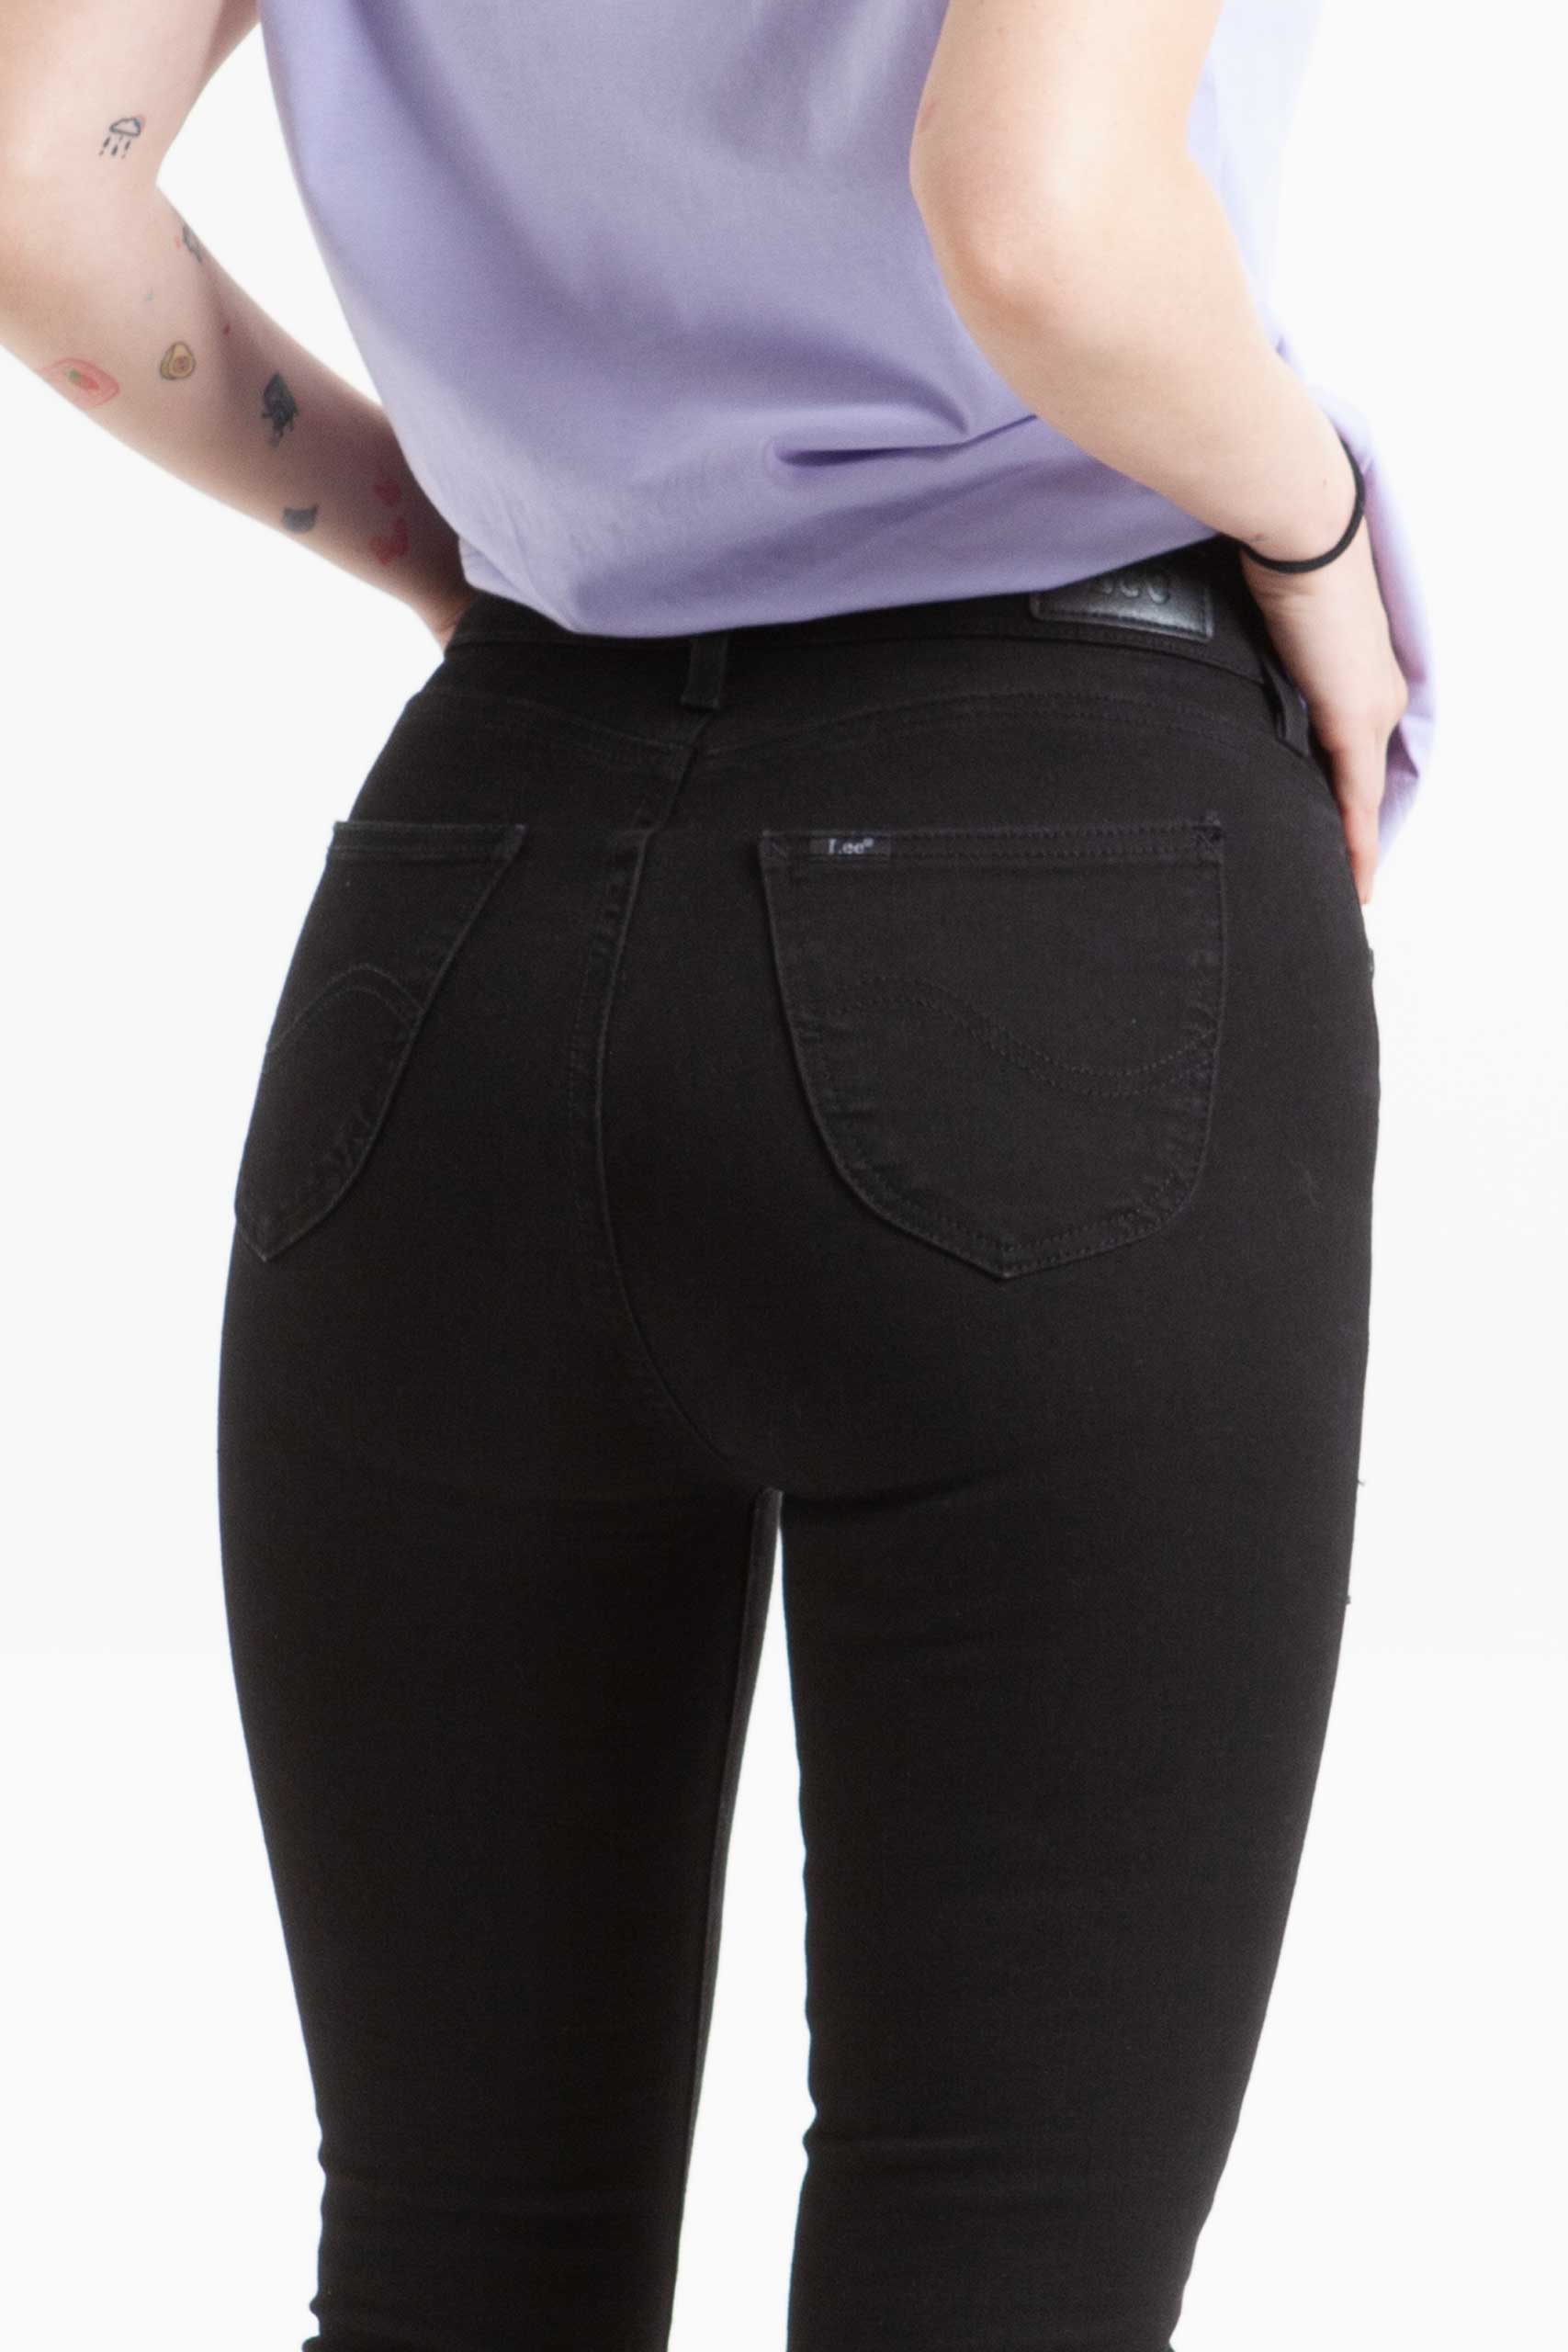 Vista Posterior de jean color negro de pierna recta de marca lee.